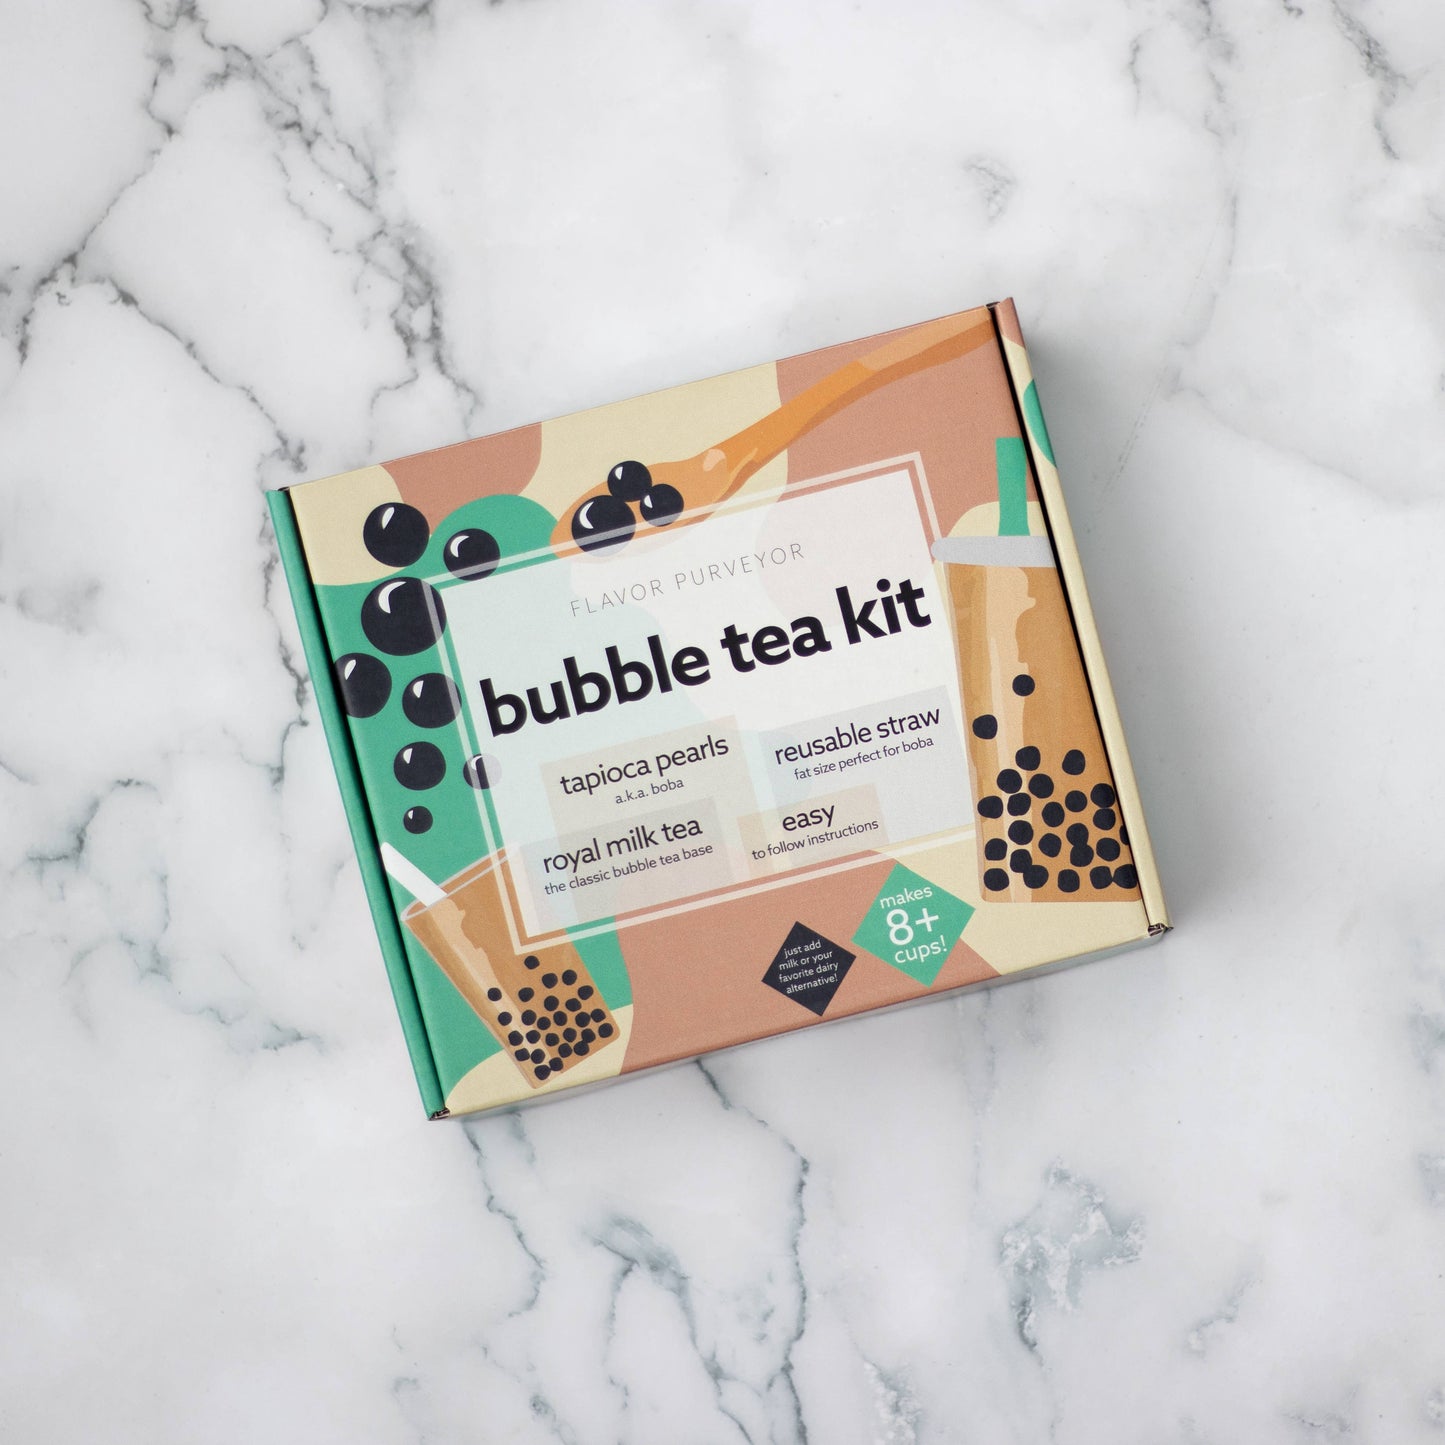 Flavor Purveyor - Bubble Tea Kit - Curated Home Decor